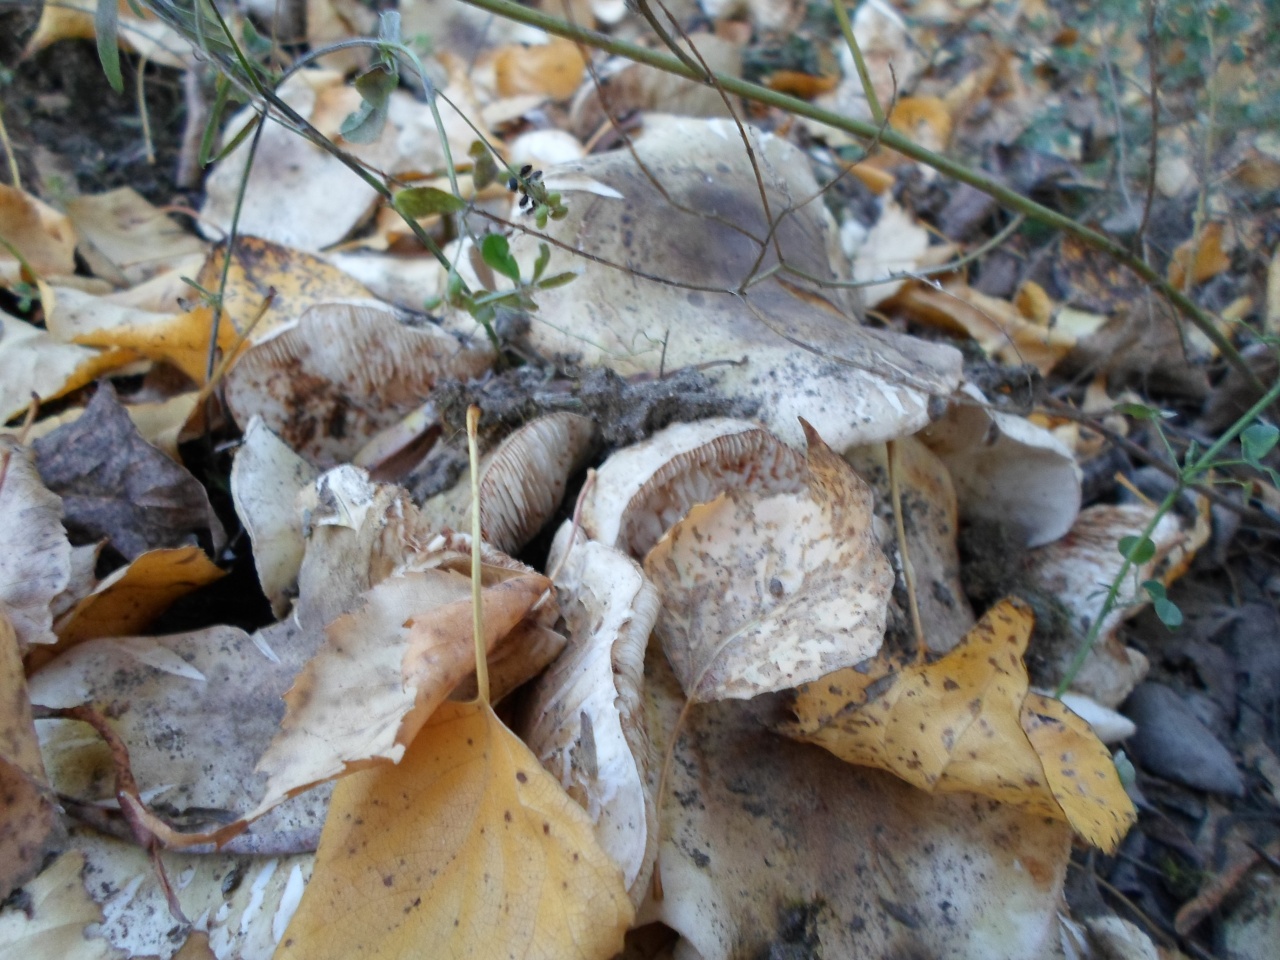 Съедобные грибы Красноярского края